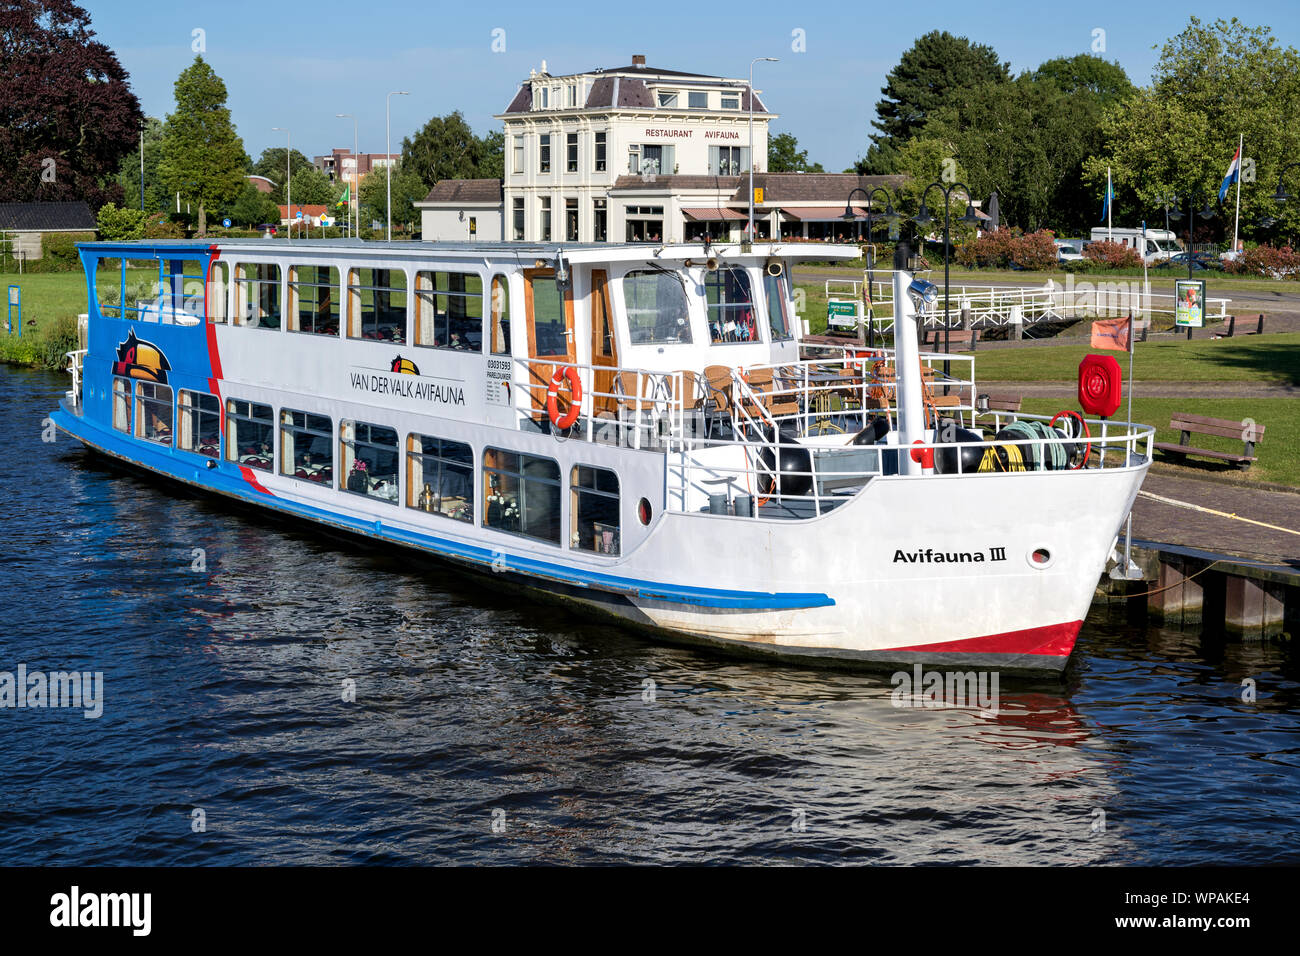 Barca per gite AVIVAUNA III del Van der Valk. Van der Valk è il più grande ospitalità olandese catena e opera anche l'Avifauna del Parco degli Uccelli. Foto Stock